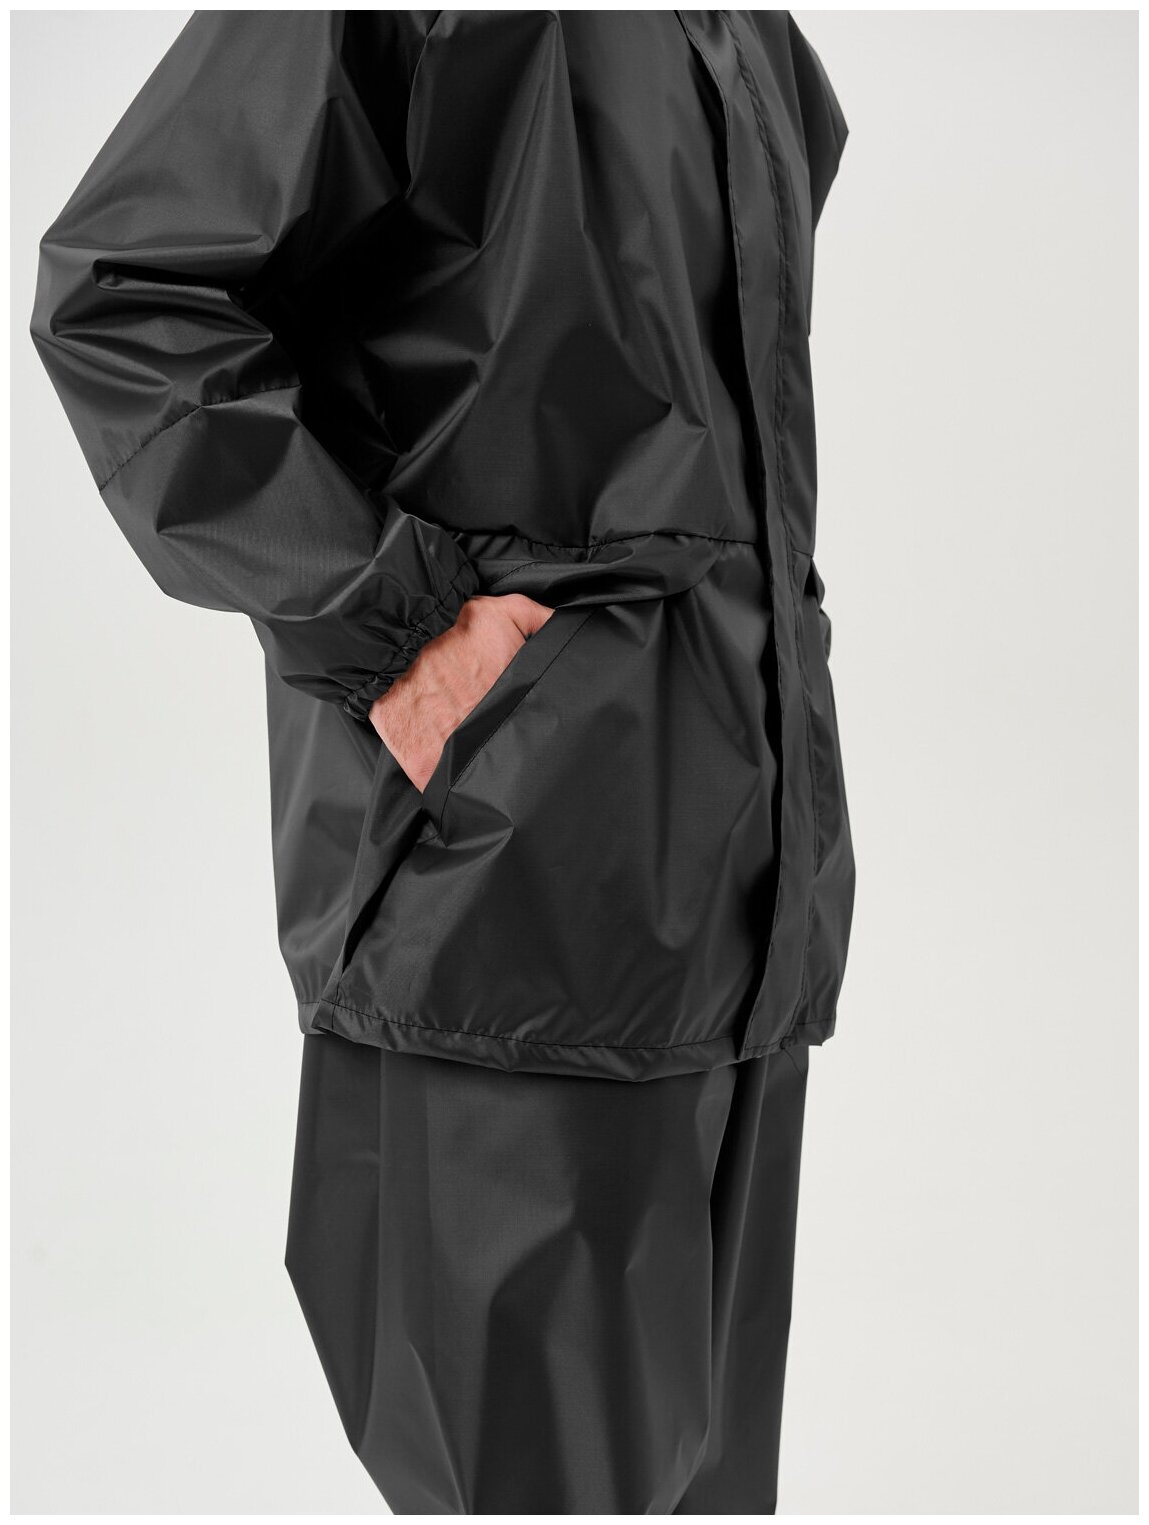 Дождевик мужской пончо накидка непромокаемый костюм KATRAN циклон (Оксфорд, темно-серый), Размер: 56-58